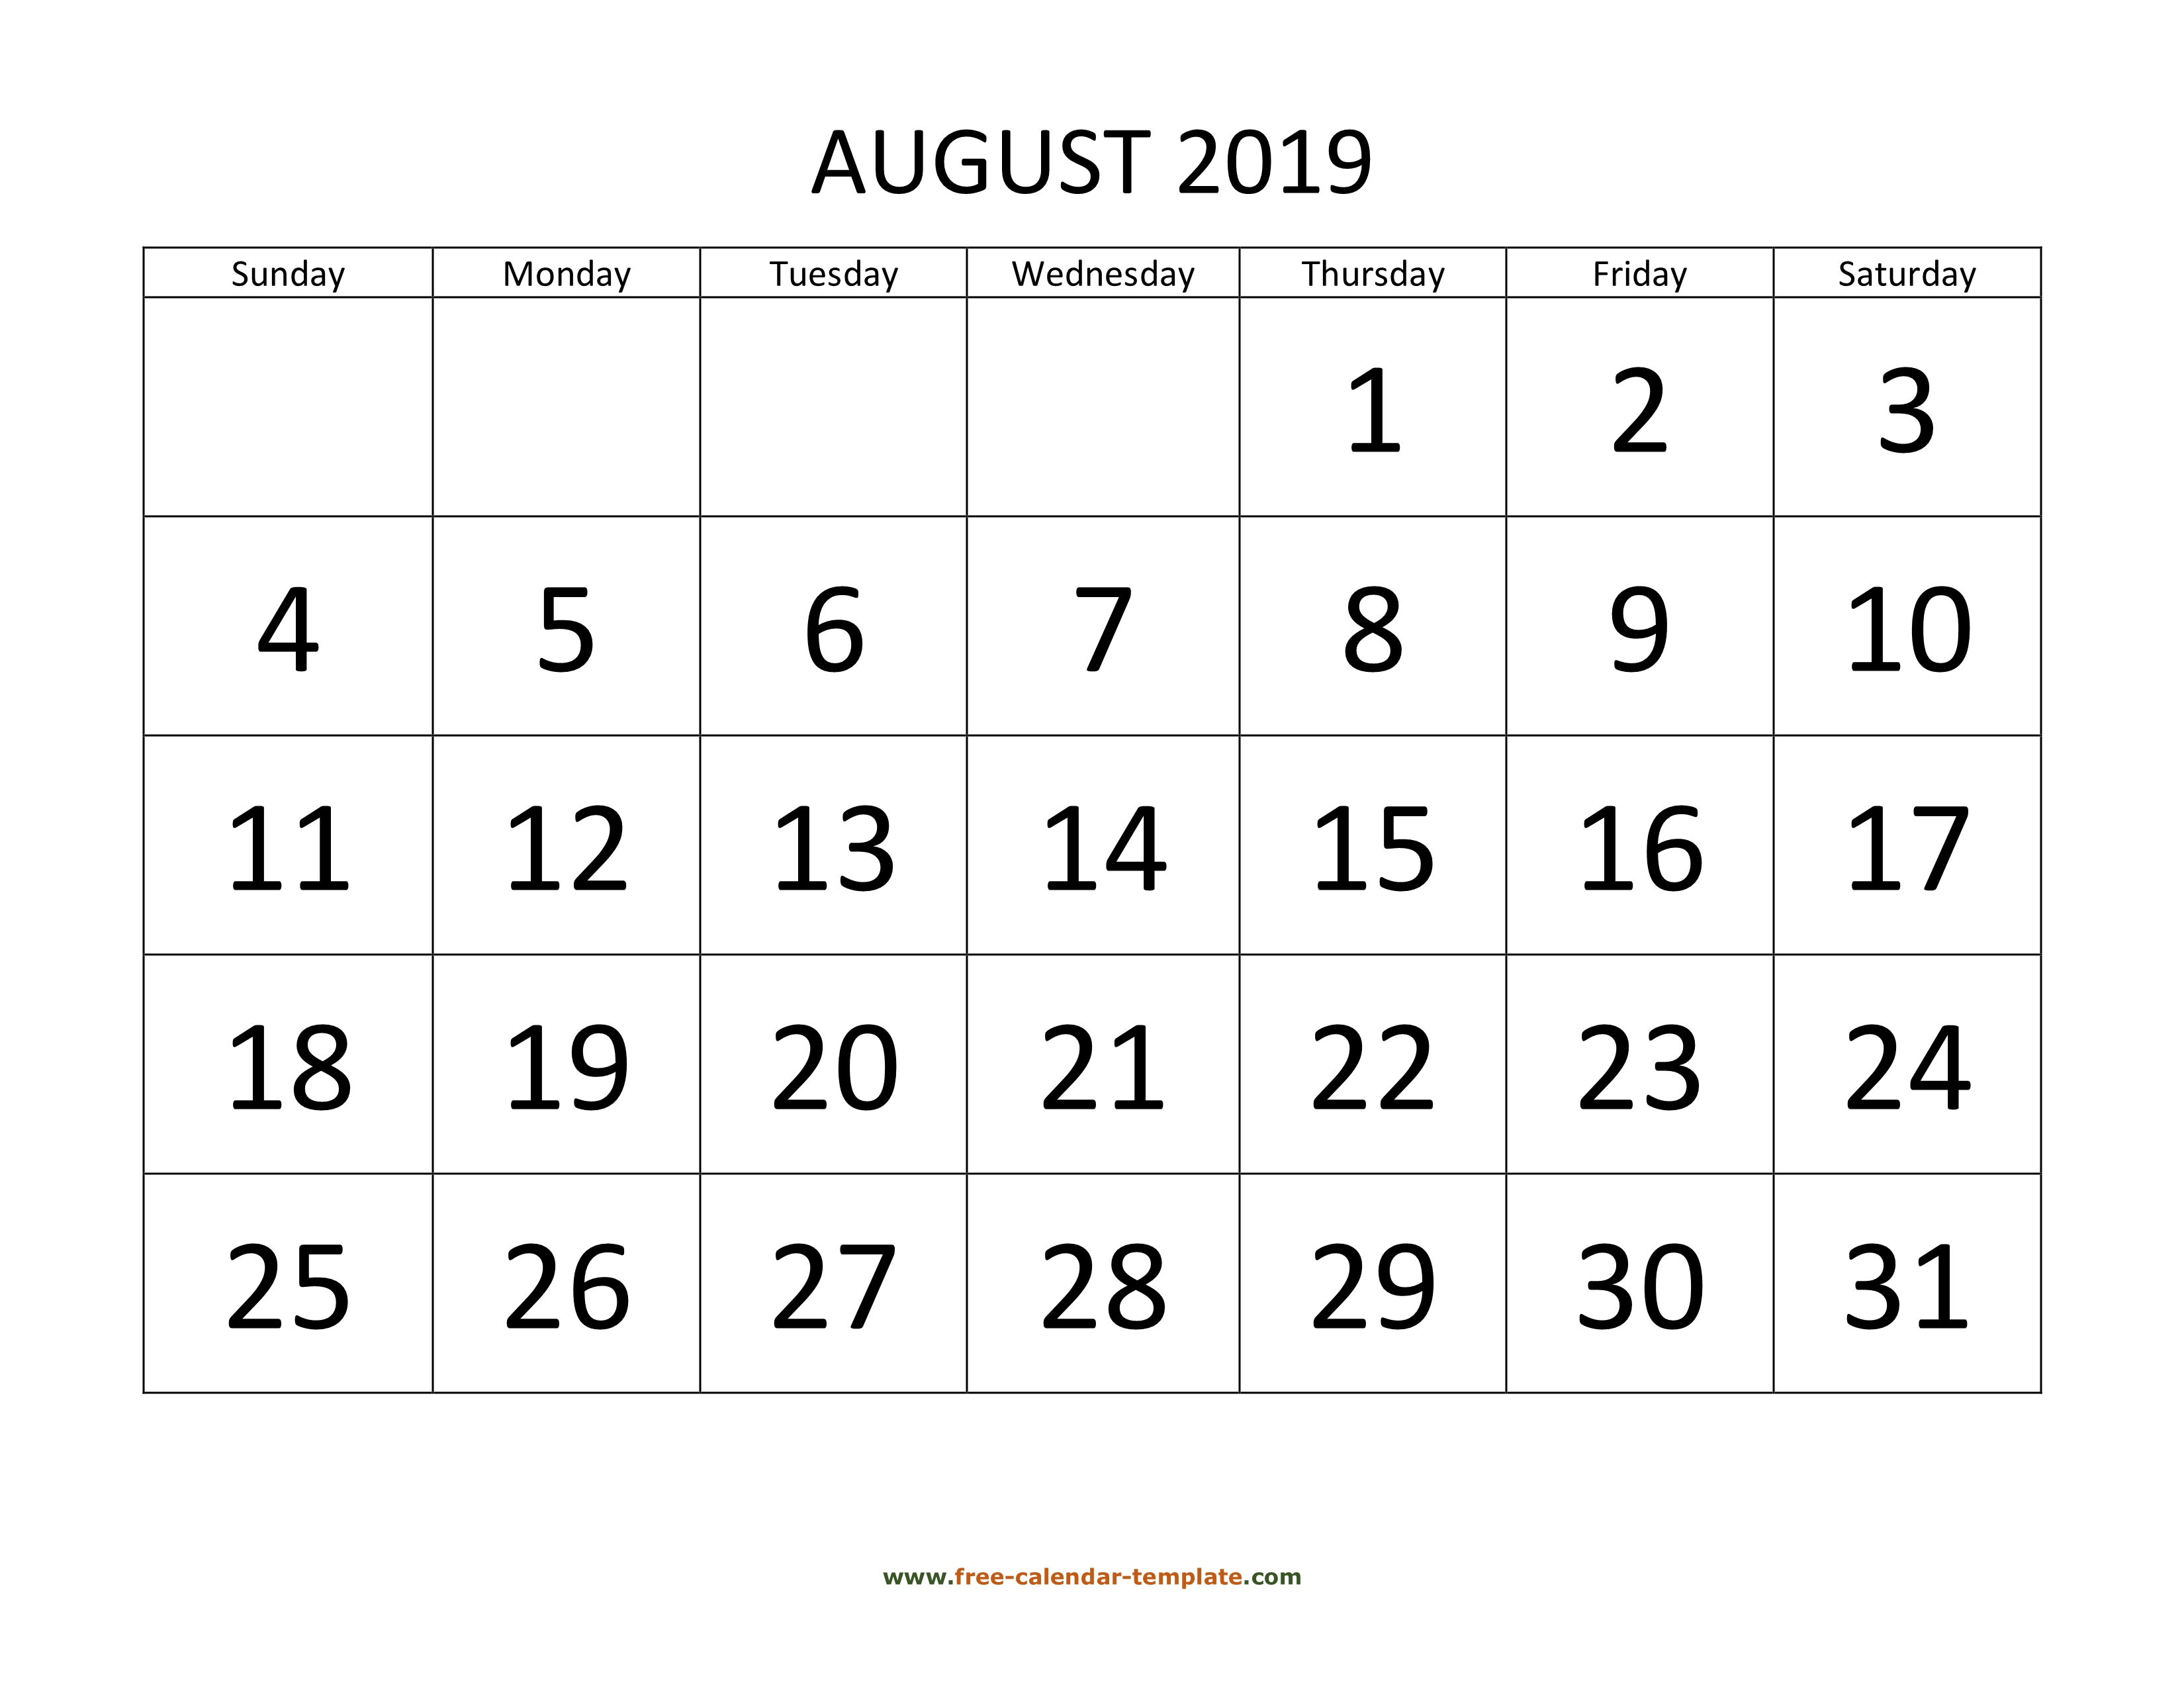 August 2019 Free Calendar Tempplate | Free-Calendar-Template